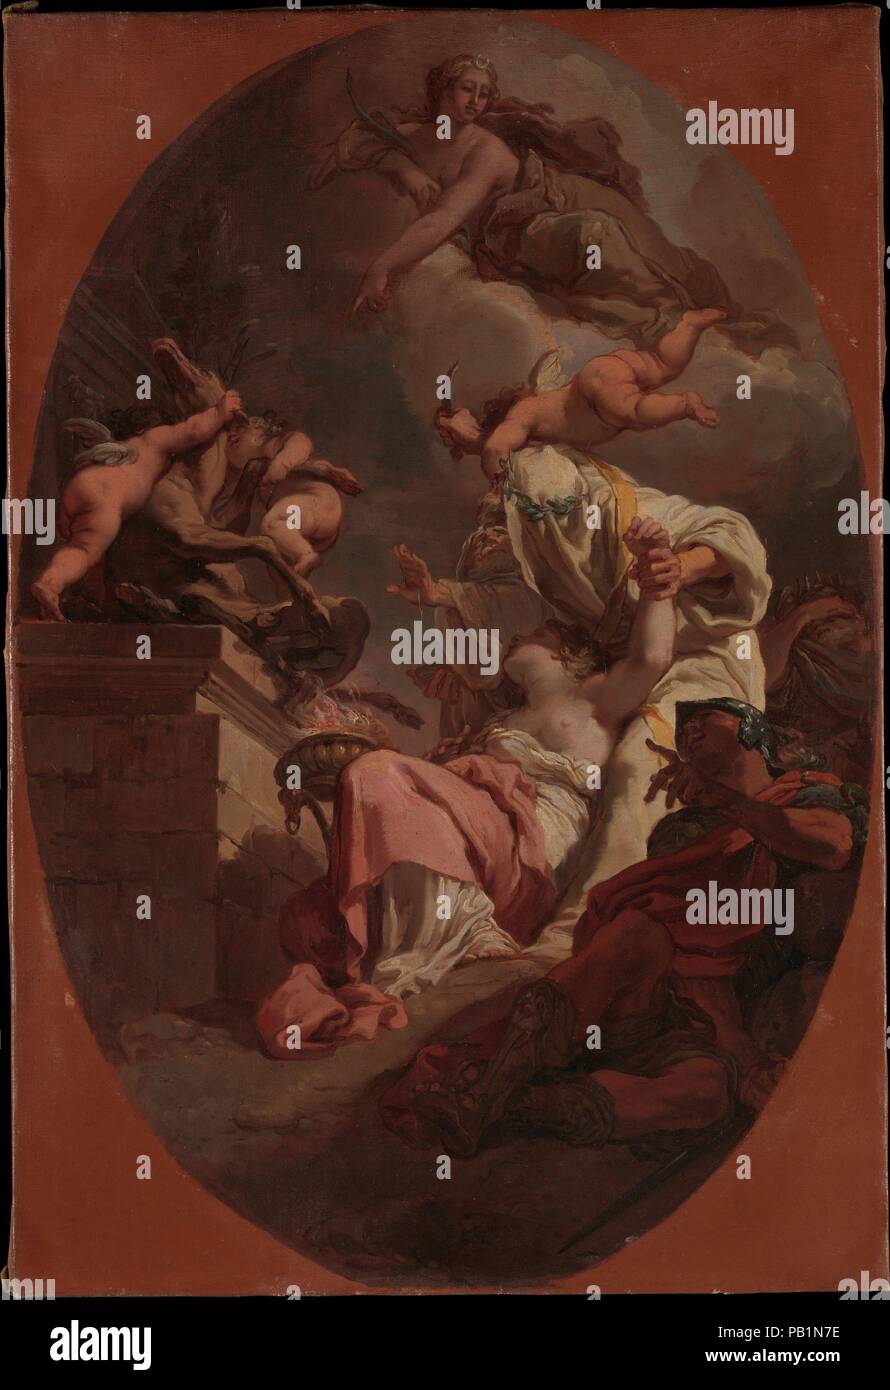 Le sacrifice d'Iphigénie. Artiste : Gaetano Gandolfi (Italien, San Matteo della Decima Bologne 1734-1802). Dimensions : 26 × 18 7/8 in. (68,3 × 45,7 cm). Date : 1789. Cette esquisse à l'huile pour un plafond dans une salle de palais Gnudi Scagliarini à Bologne prend son sujet à partir de la grande dramaturge grec Euripide (ca. 480-406 avant J.-C.). Fille d'Agamemnon est sur le point d'être sacrifiée pour apaiser la déesse Diane, qui au moment de l'apogée apparaît et remplace par un cerf sur l'autel. Un putto volant reste la main du prêtre tandis que le guerrier Achille, qui avait tenté d'intervenir, se trouve sur le terrain, comme Banque D'Images